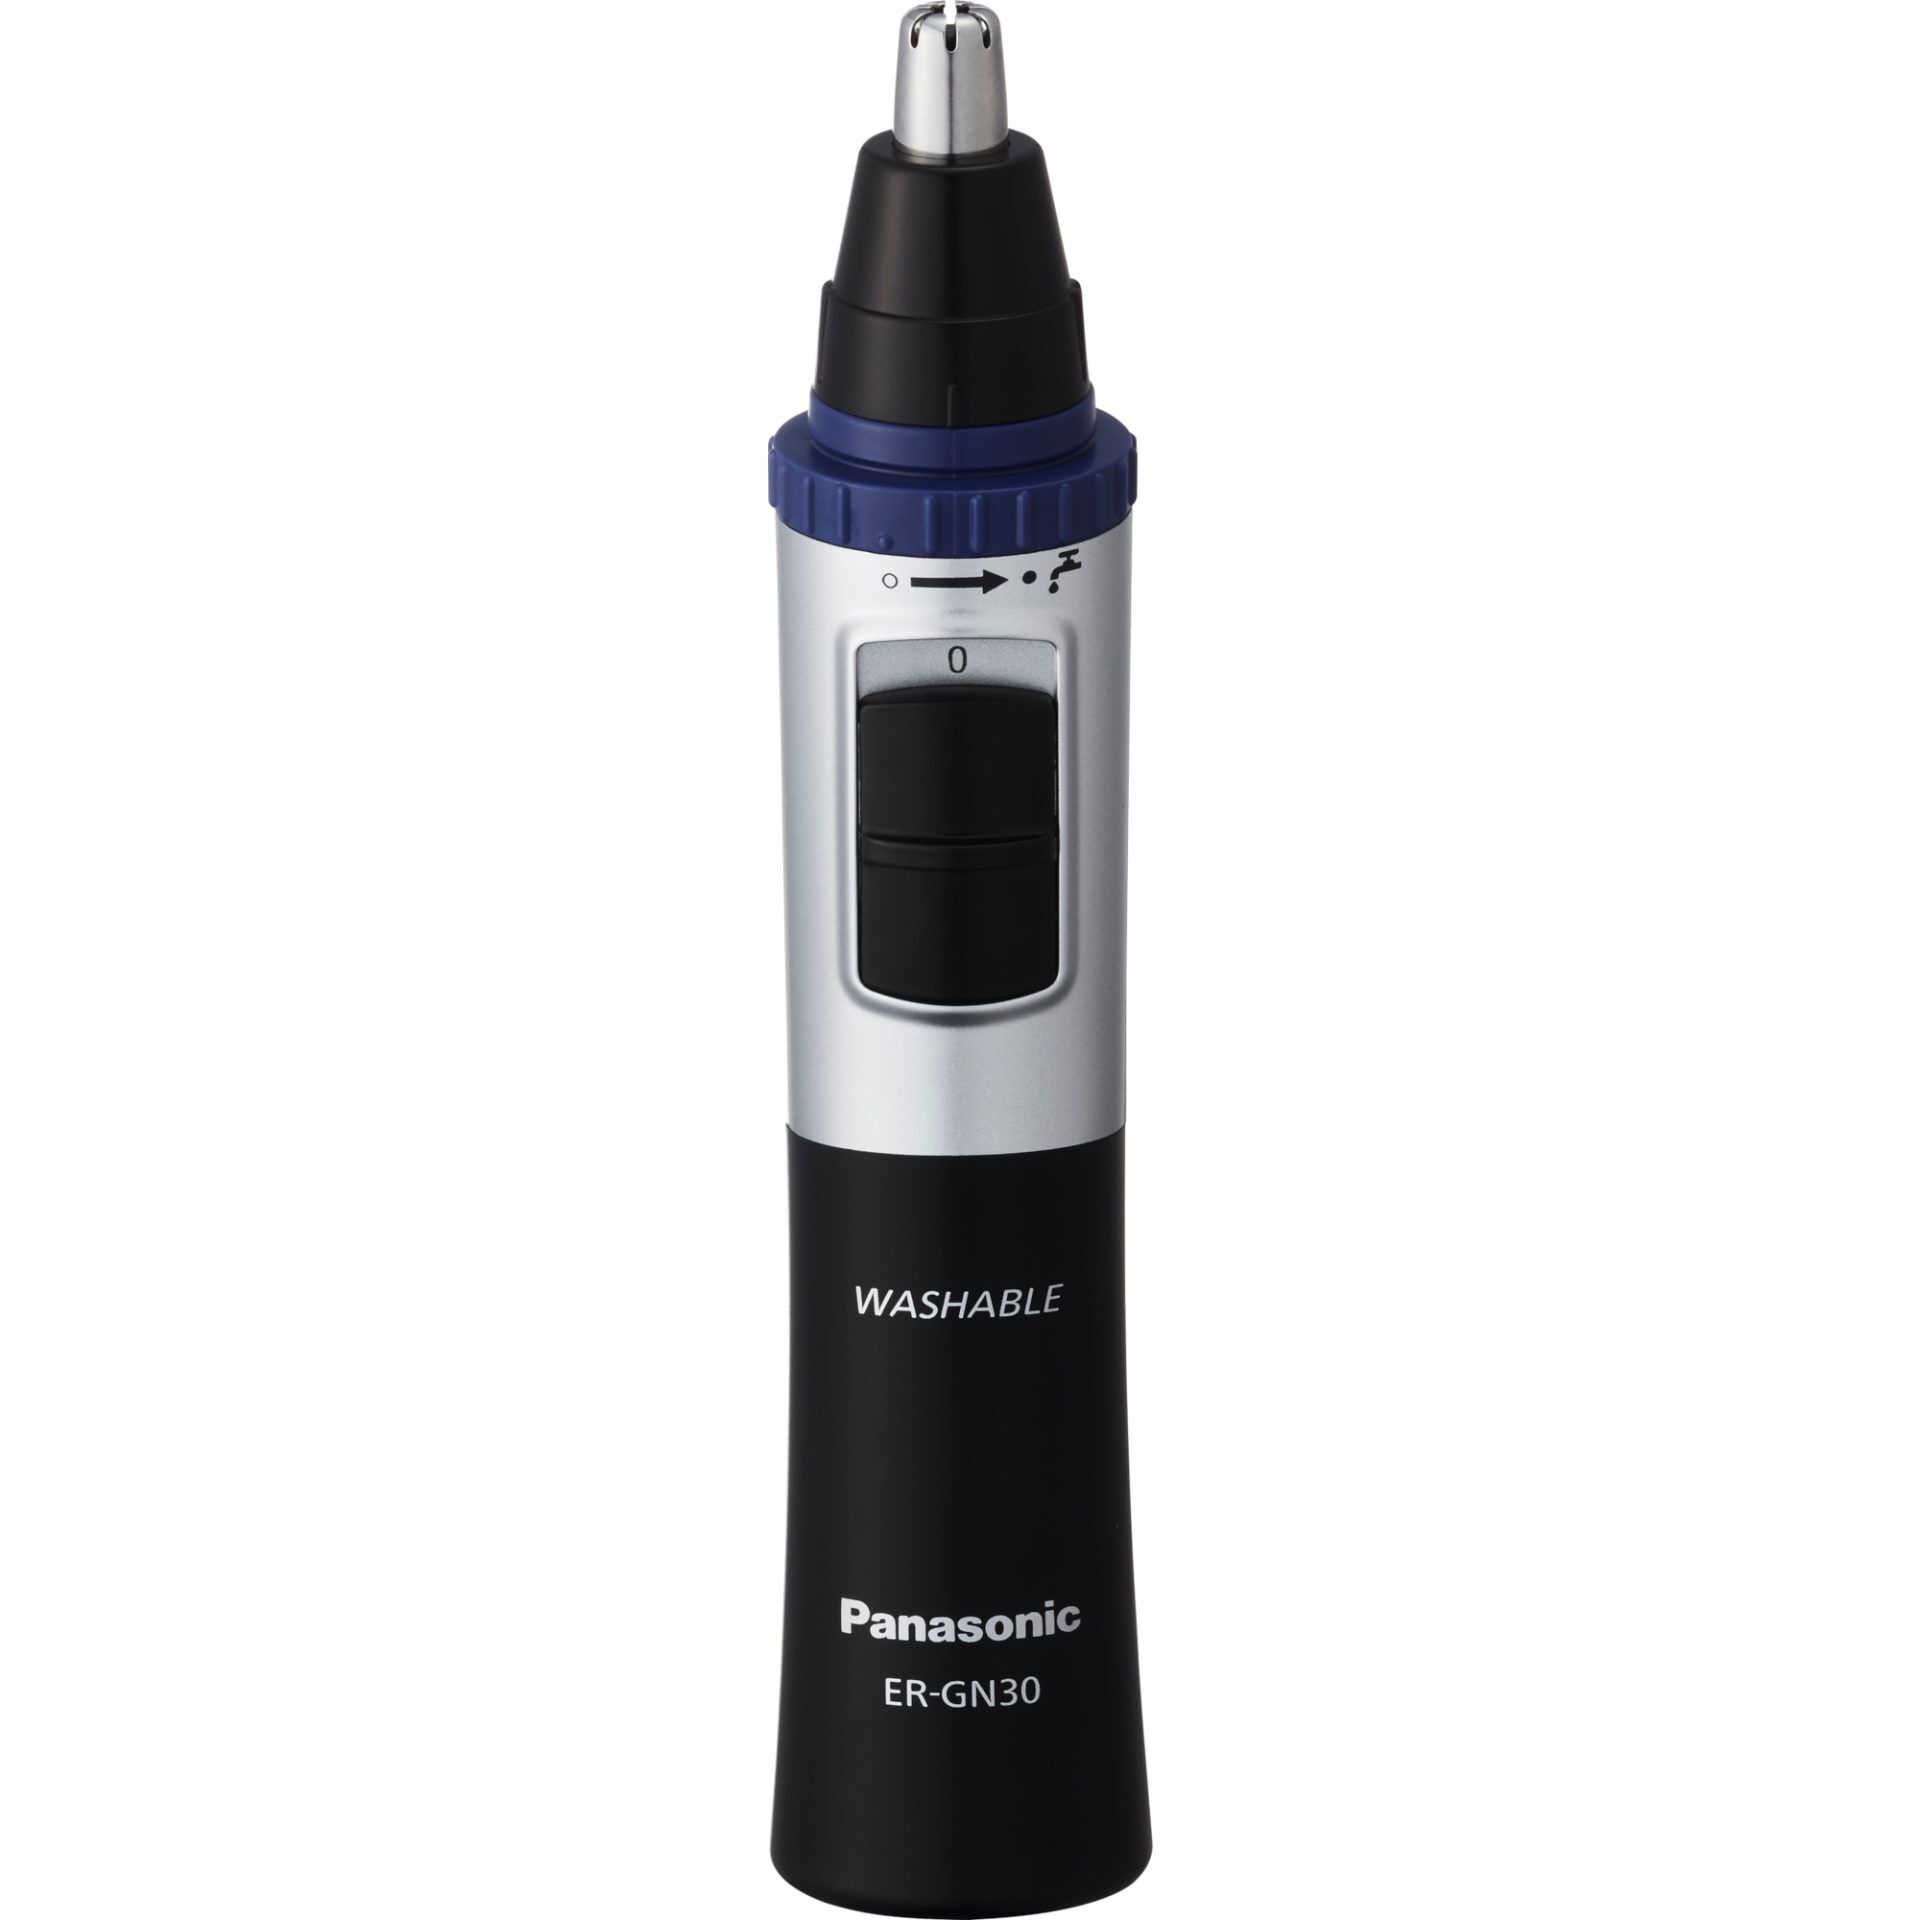 Panasonic ER-GN30-K503 триммер для носа и ушей черный, 1 шт. бытовая техника panasonic er gn30 k503